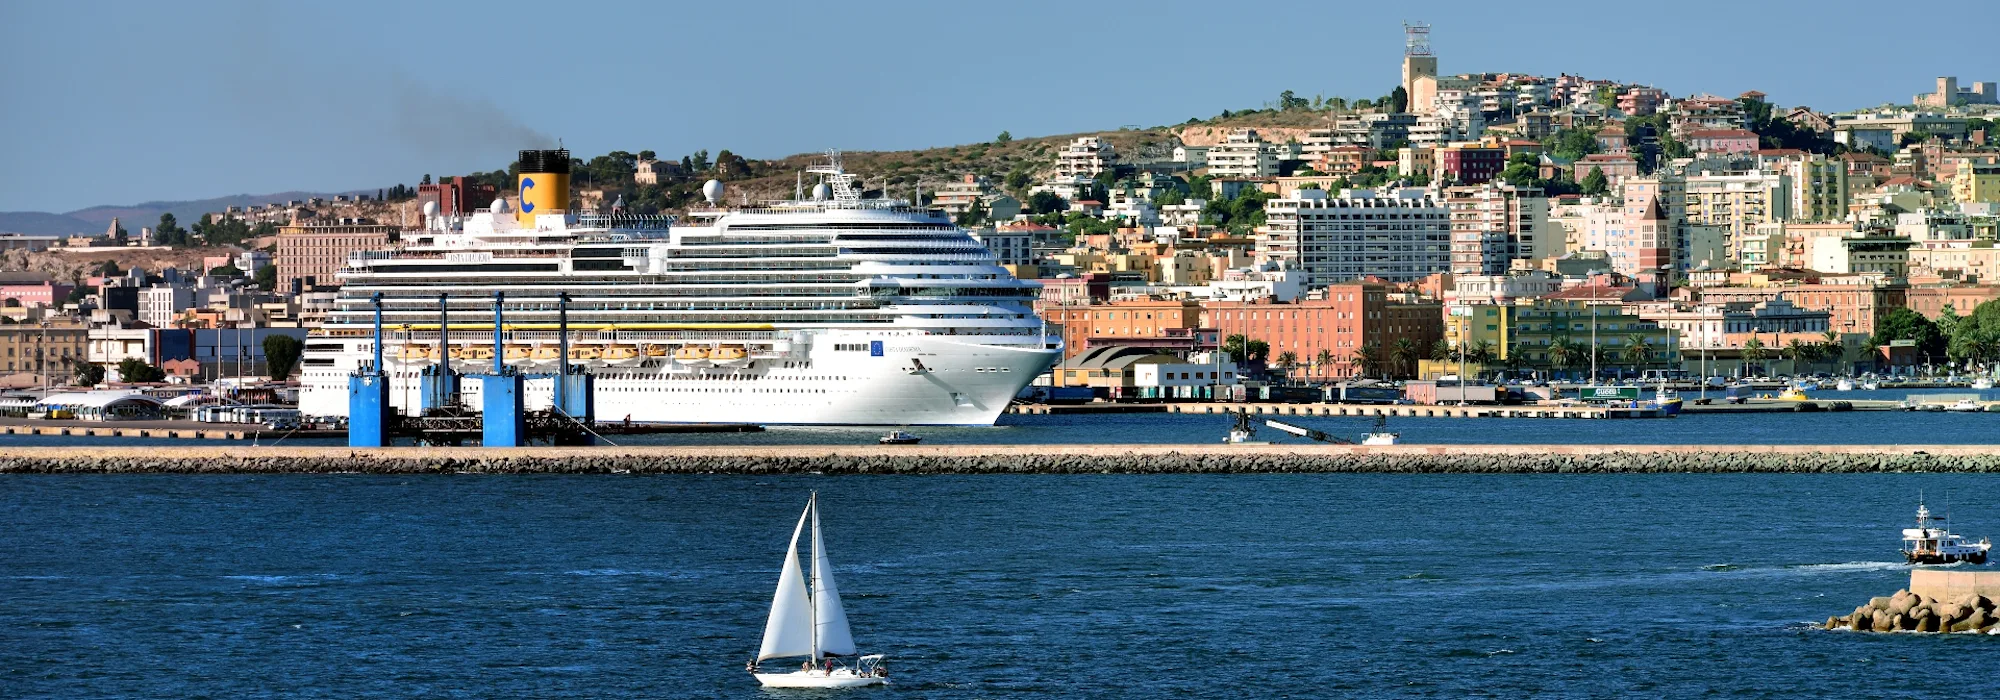 Costa Diadema - Costa Cruises